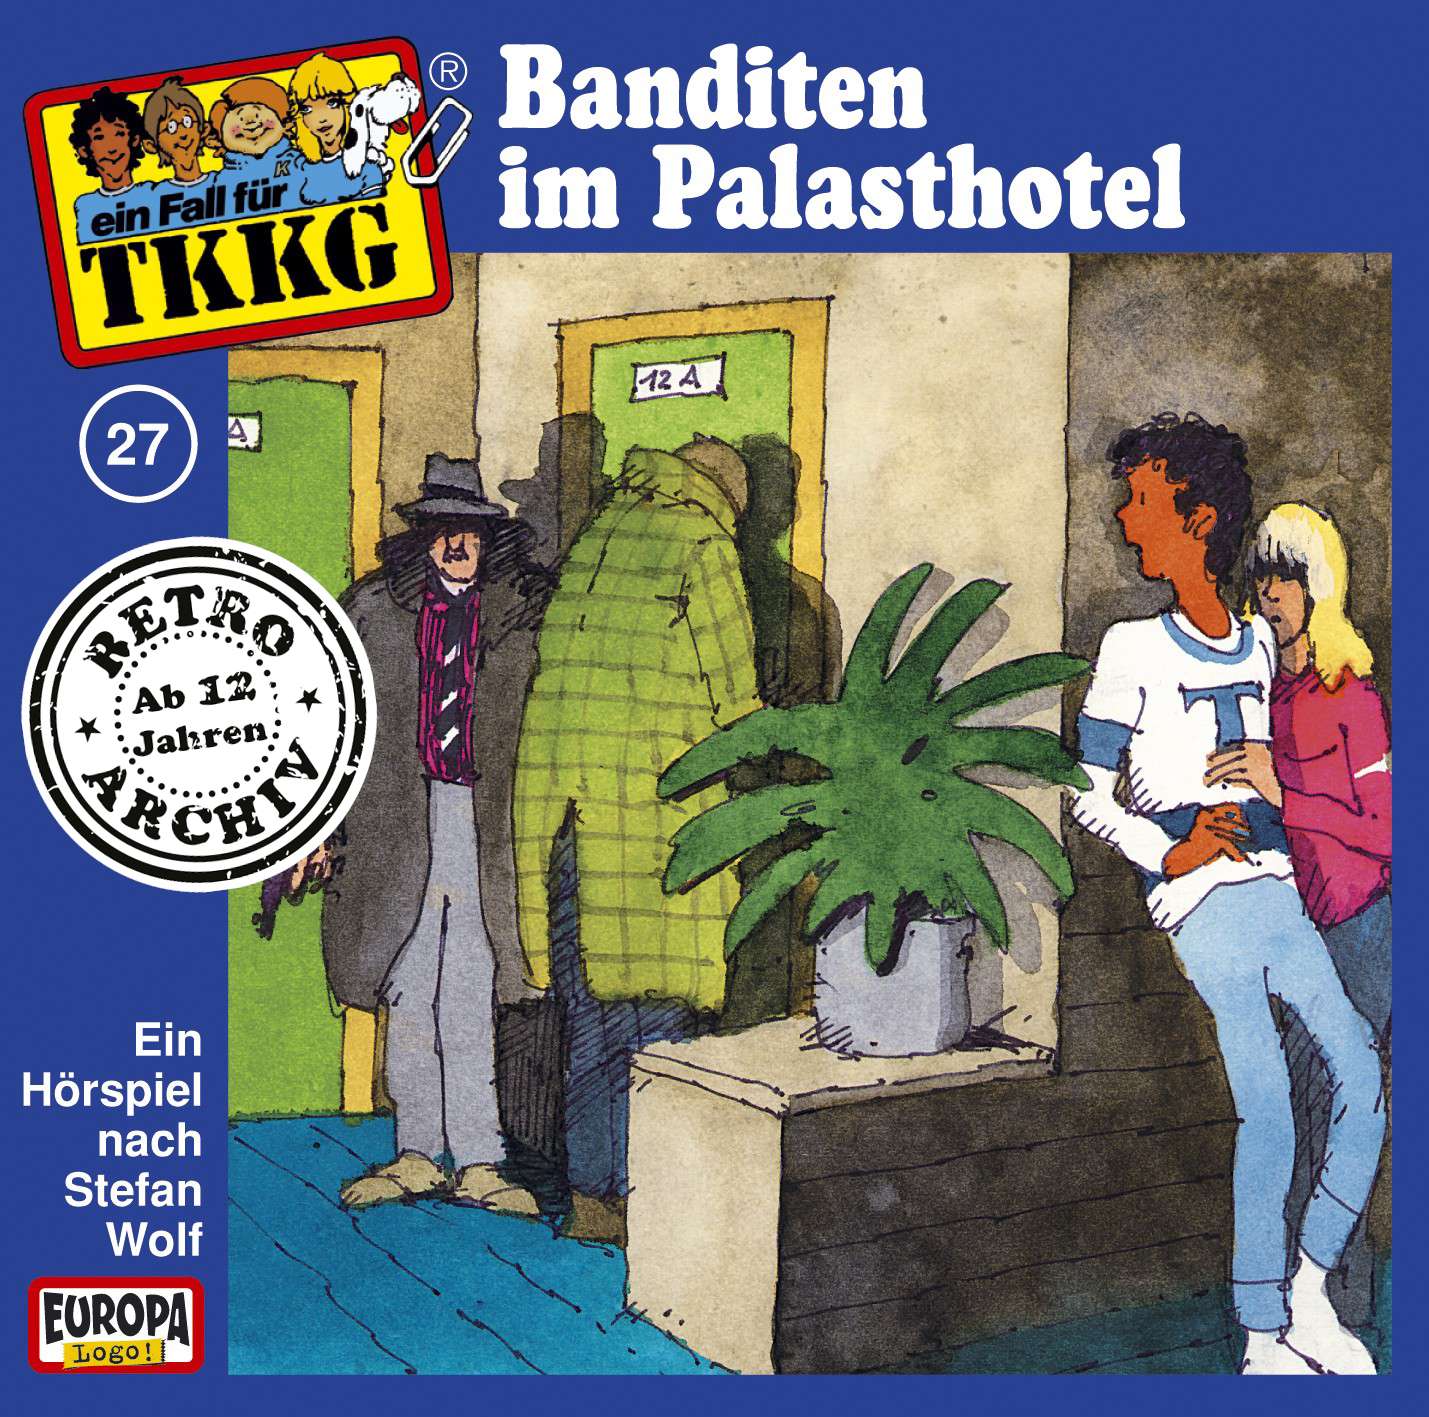 TKKG Retro-Archiv - Banditen im Palasthotel